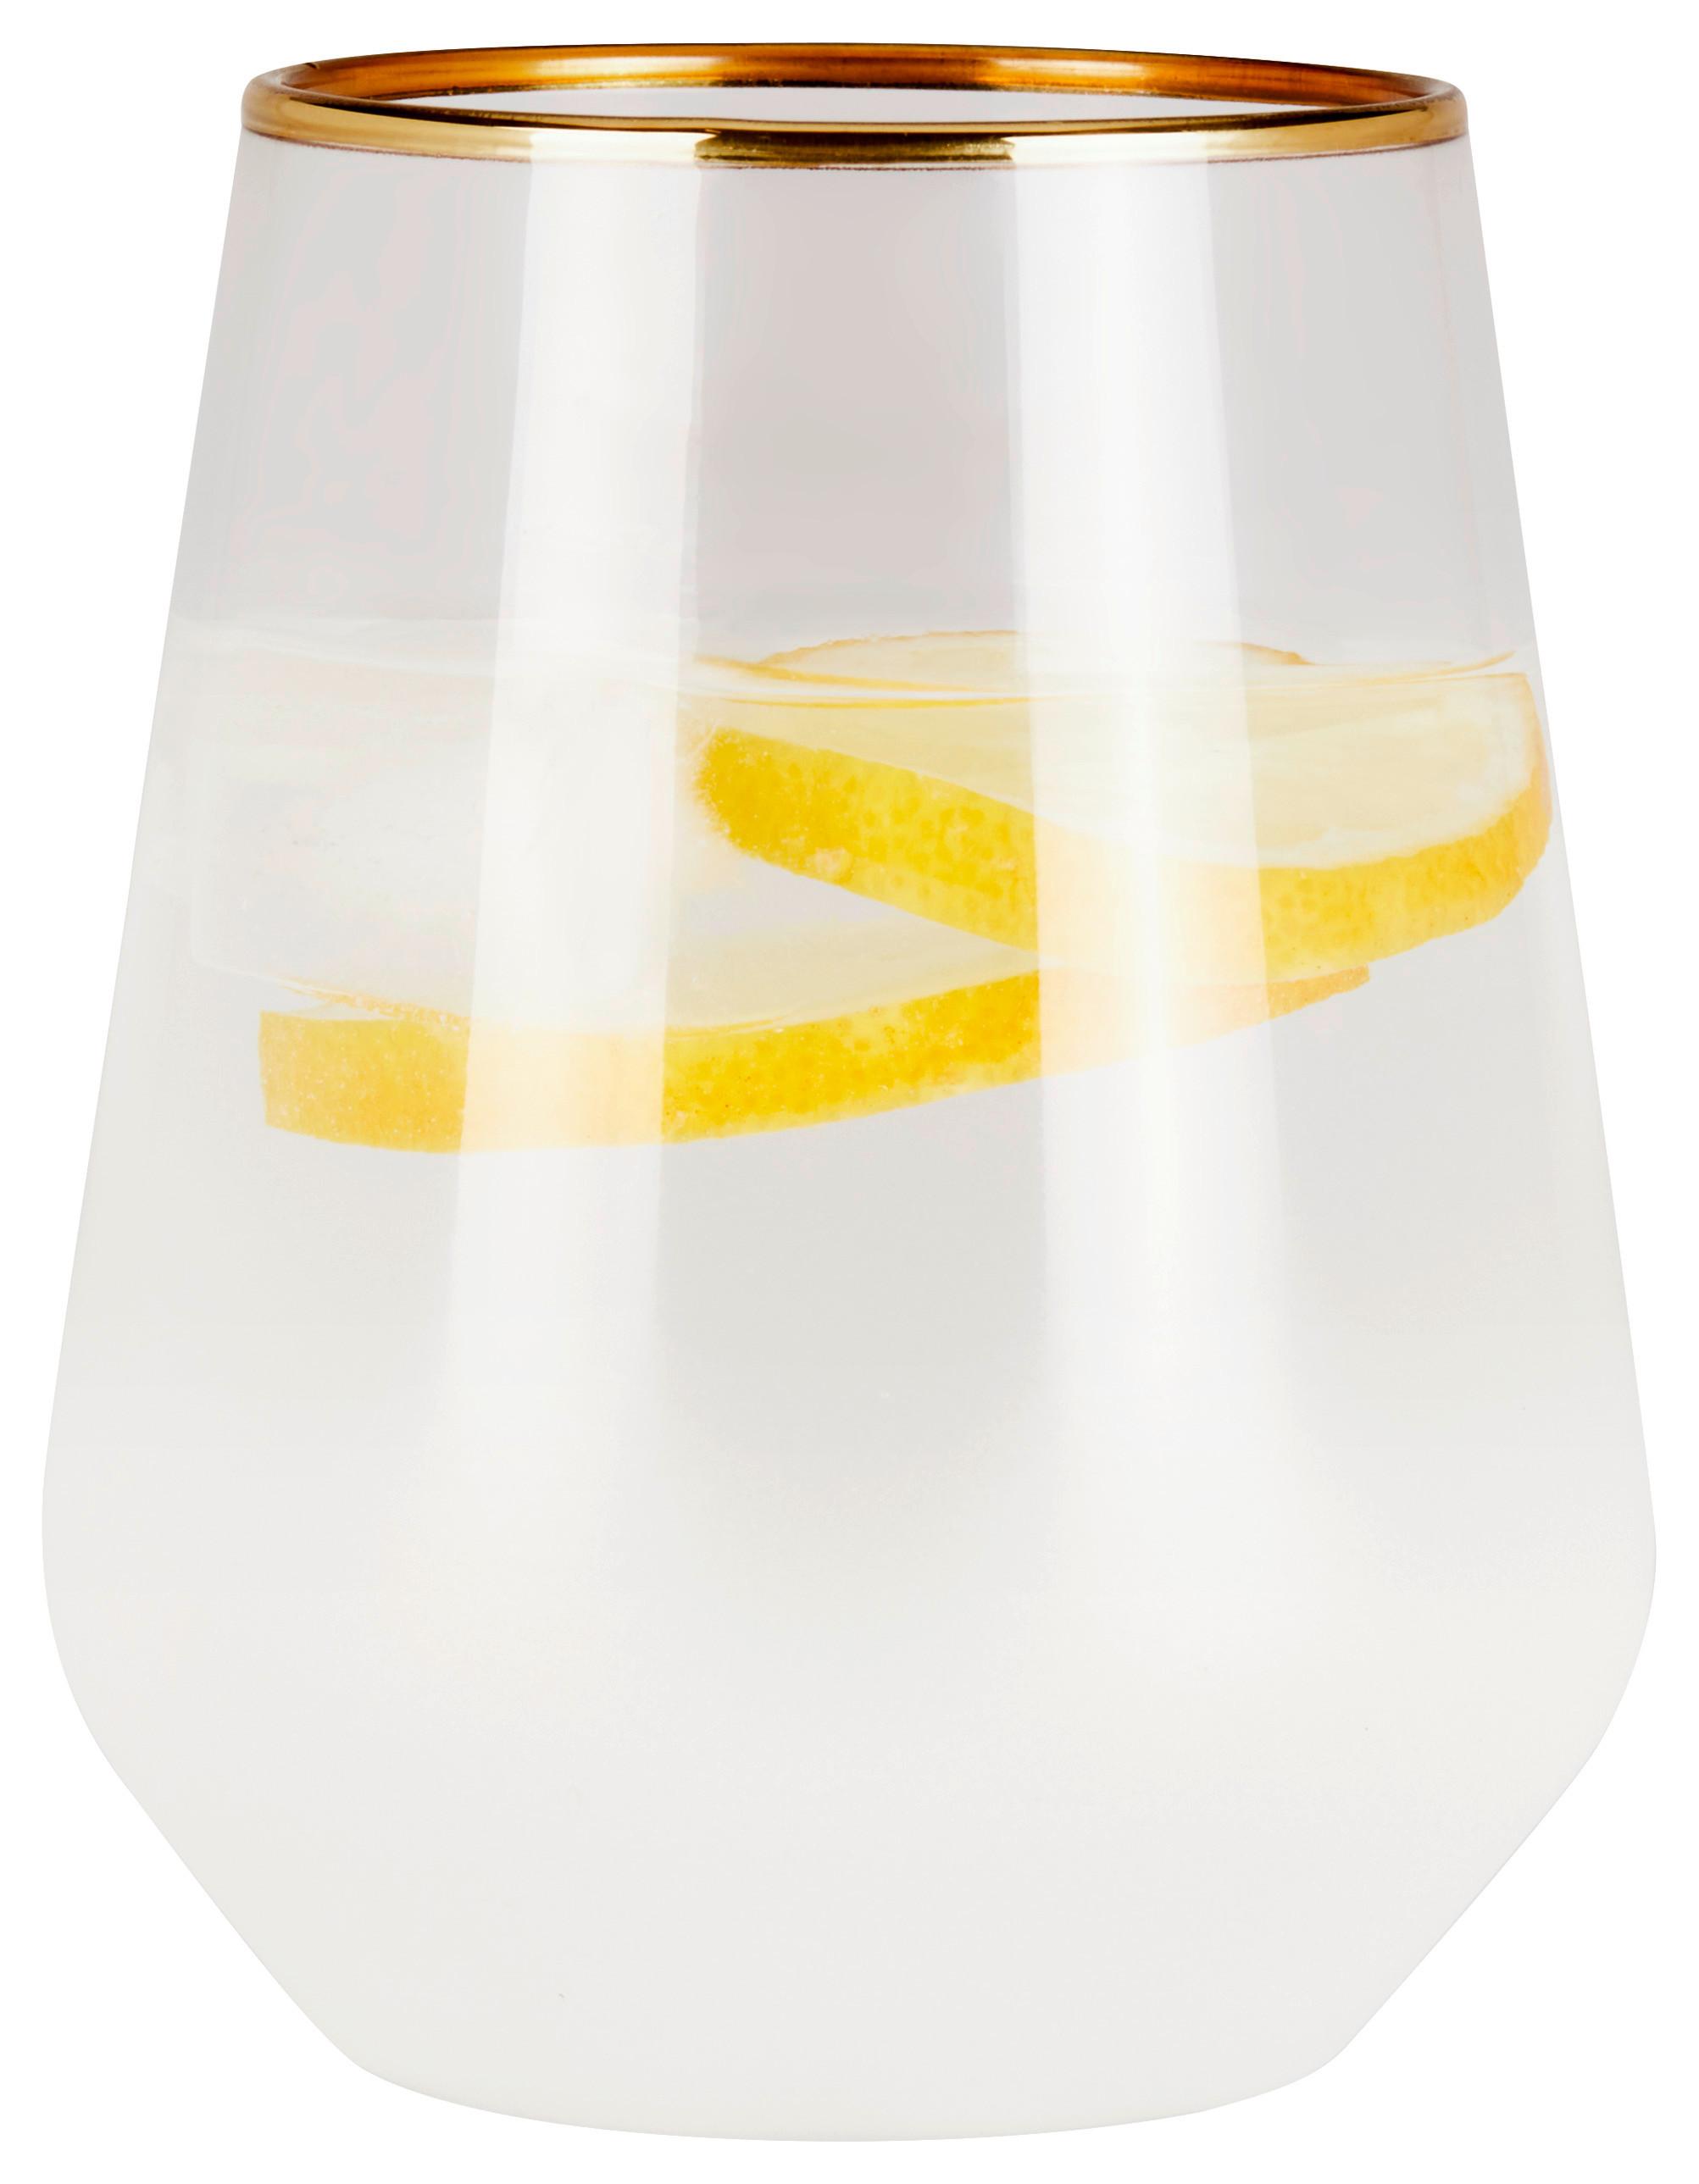 Trinkglas mit Goldenem Rand Hella, ca. 425 ml - Transparent/Goldfarben, ROMANTIK / LANDHAUS, Glas (6,8/11cm) - James Wood